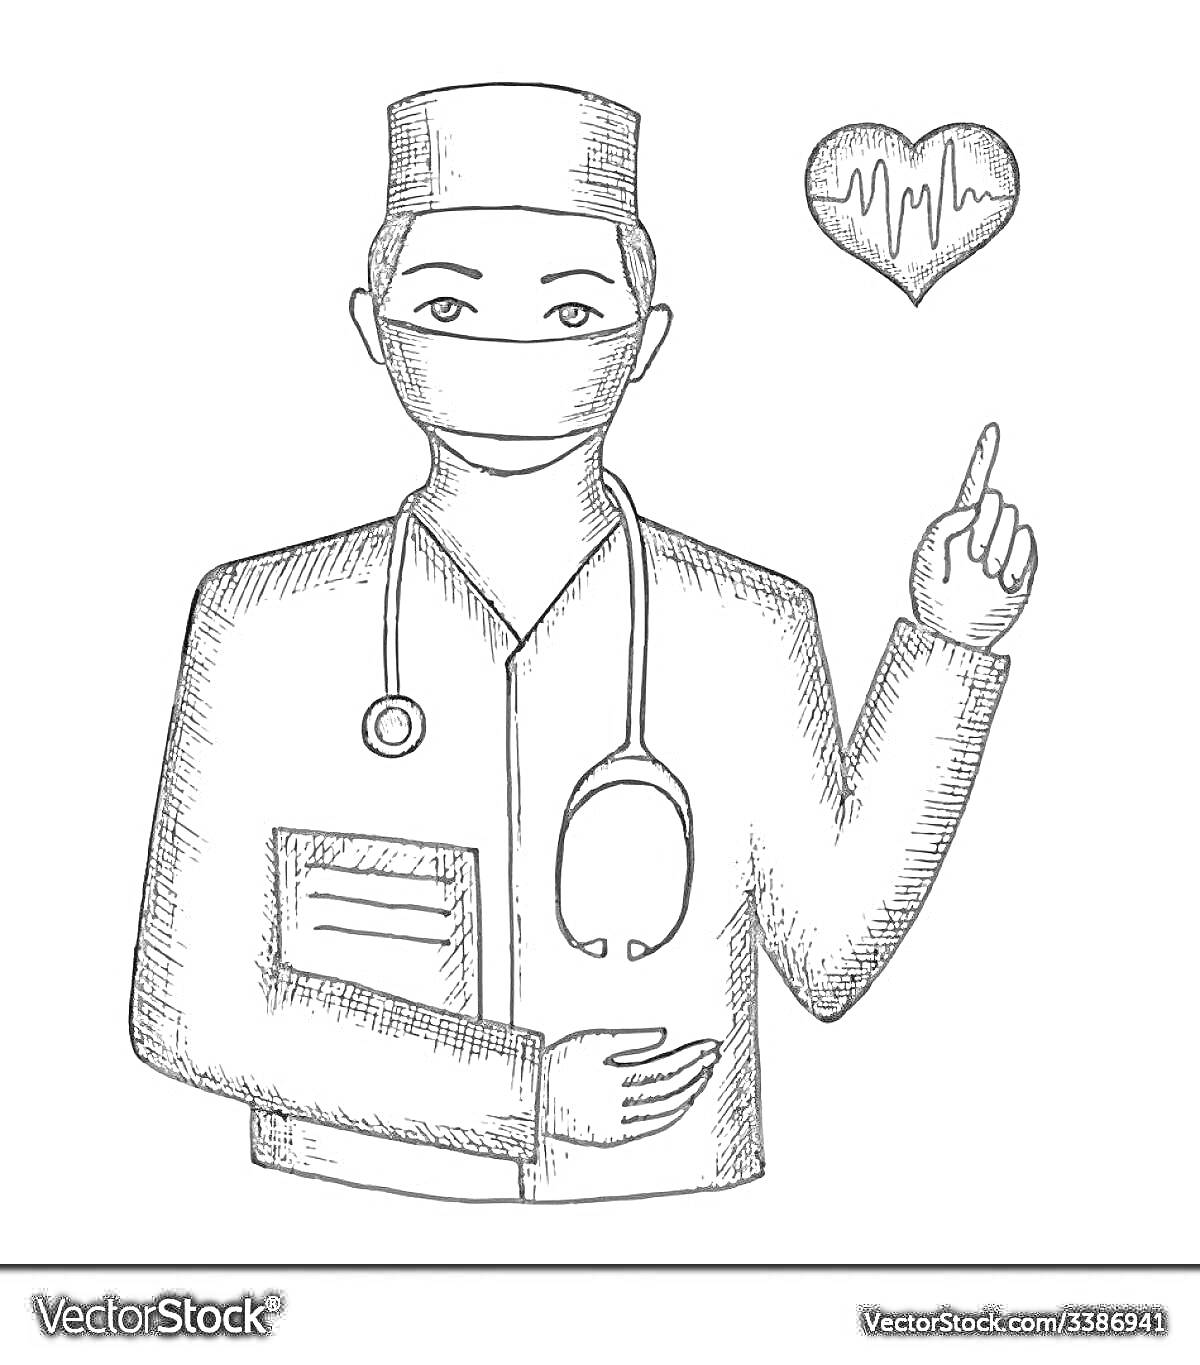 Раскраска Врач в медицинской форме с книгой и стетоскопом, показывающий на сердце с кардиограммой